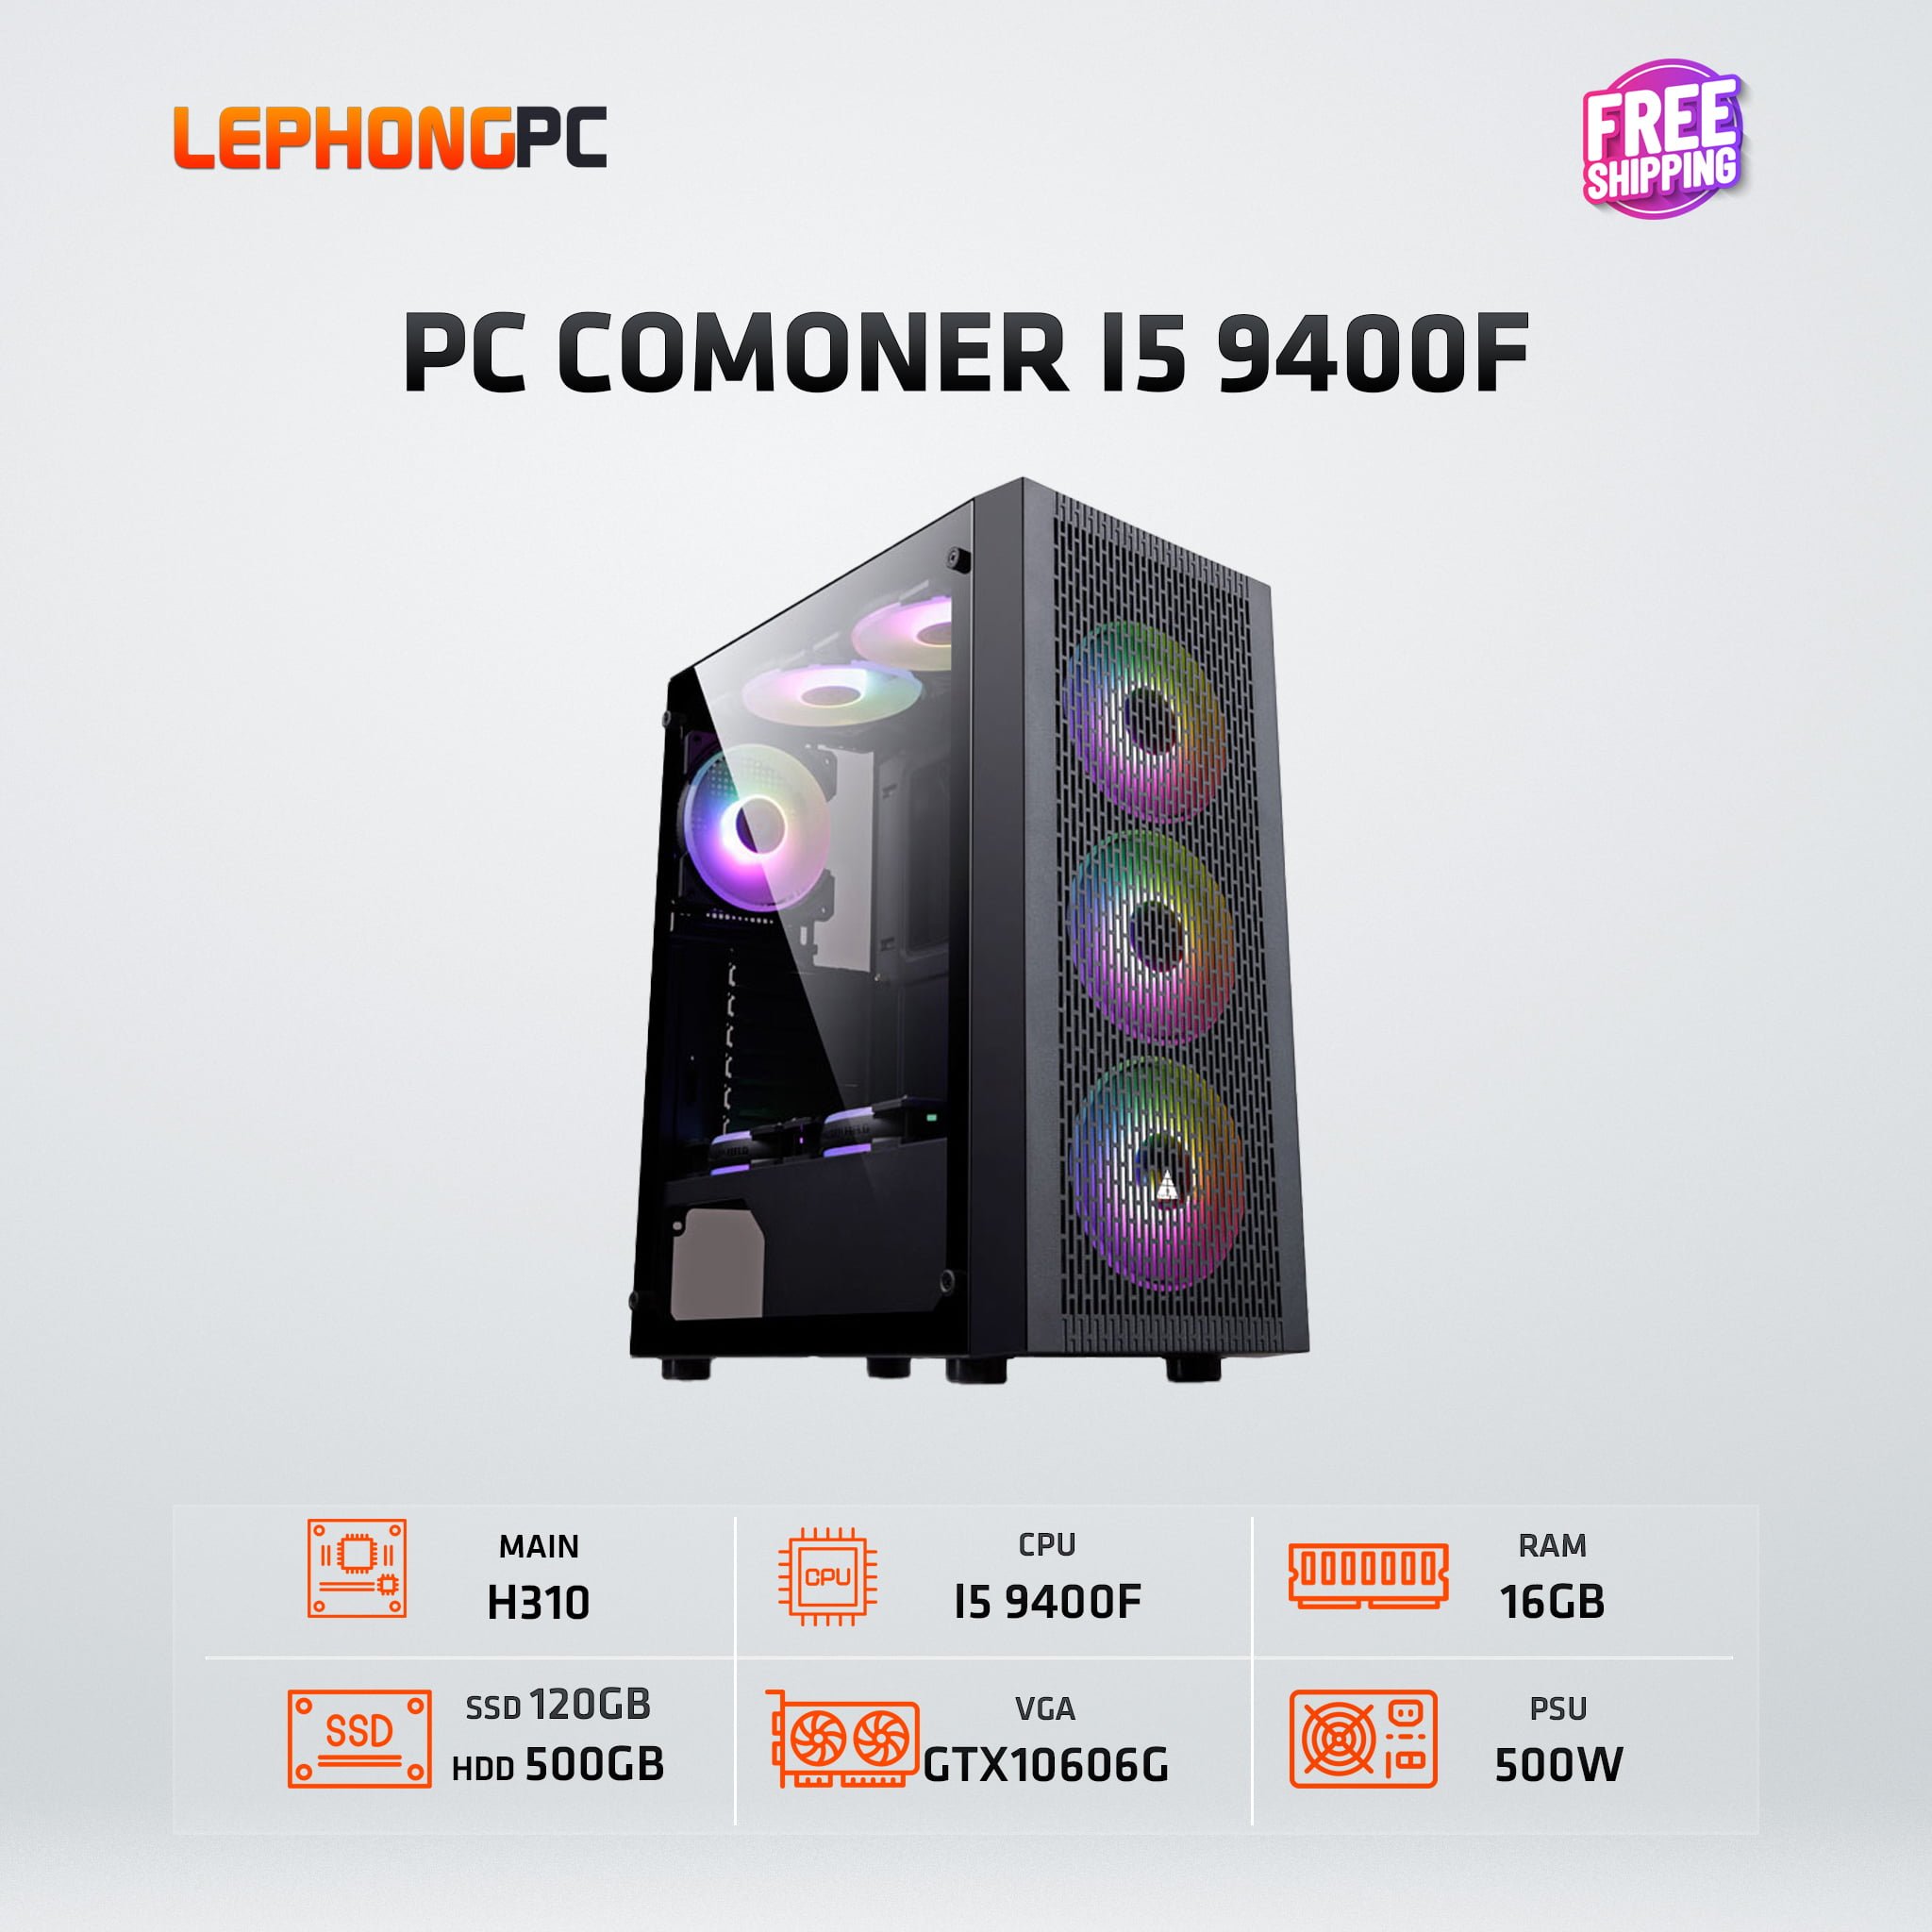 PC COMONER I5 9400F